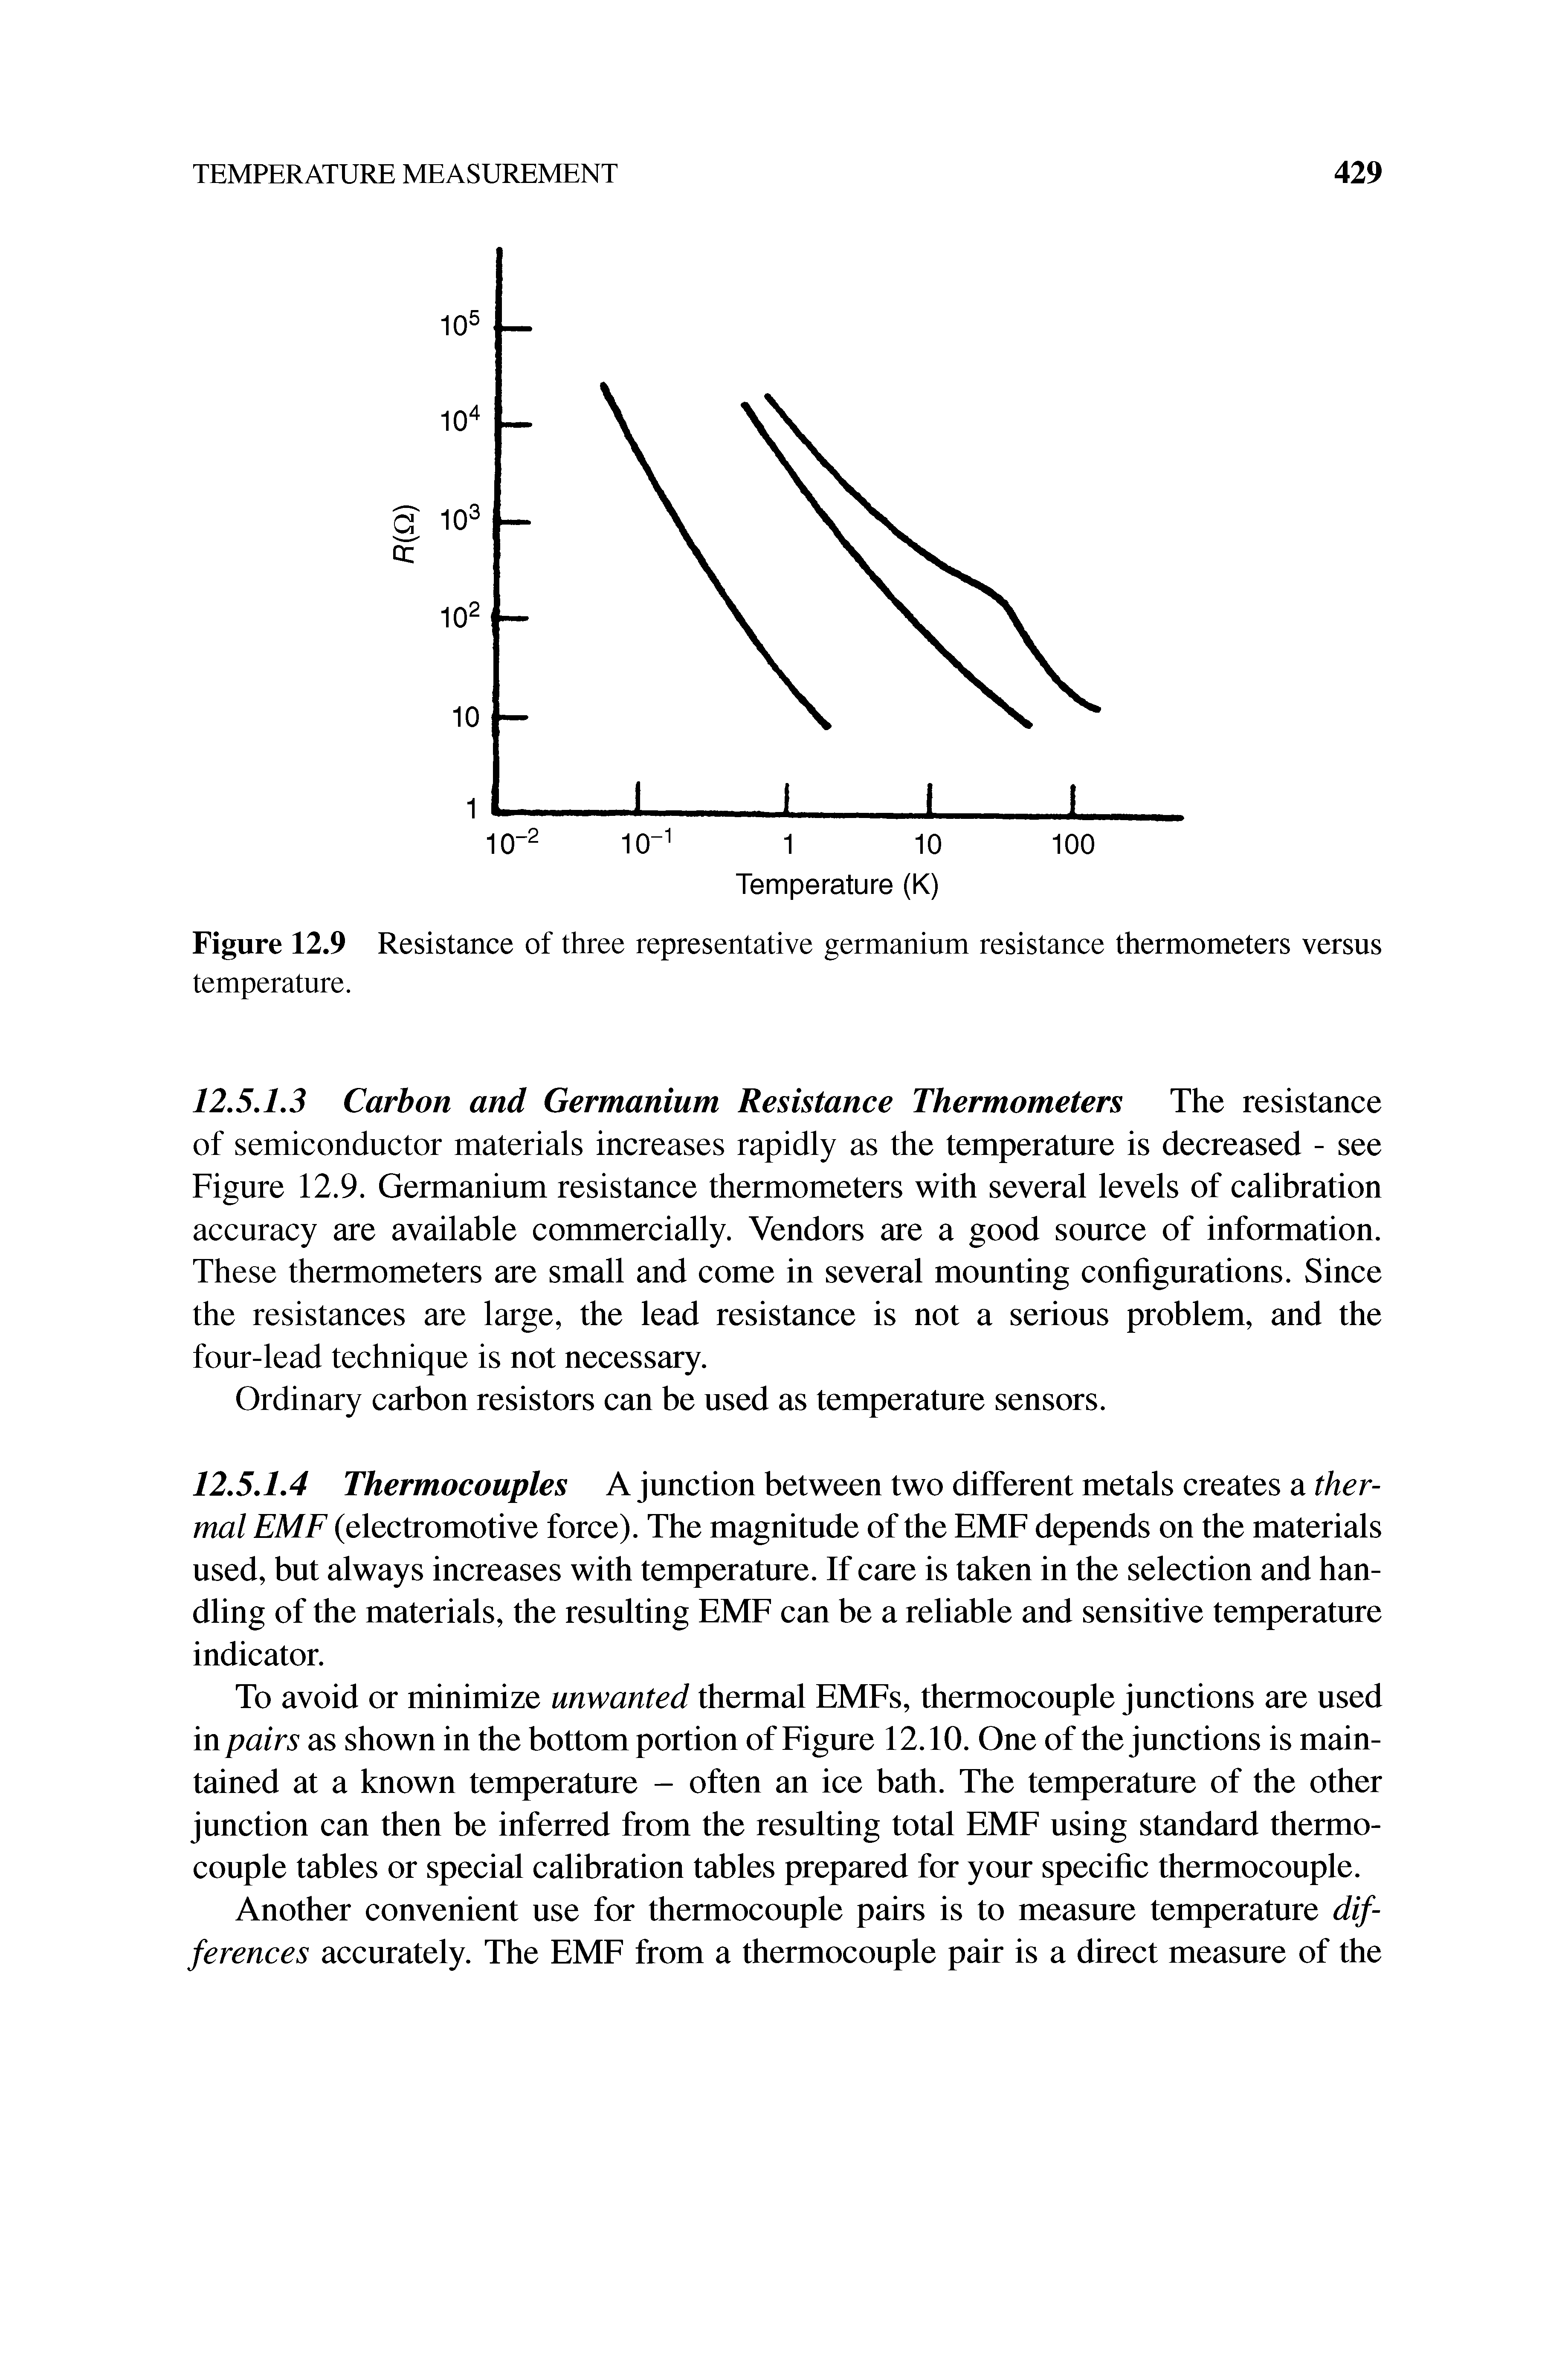 Figure 12.9 Resistance of three representative germanium resistance thermometers versus temperature.